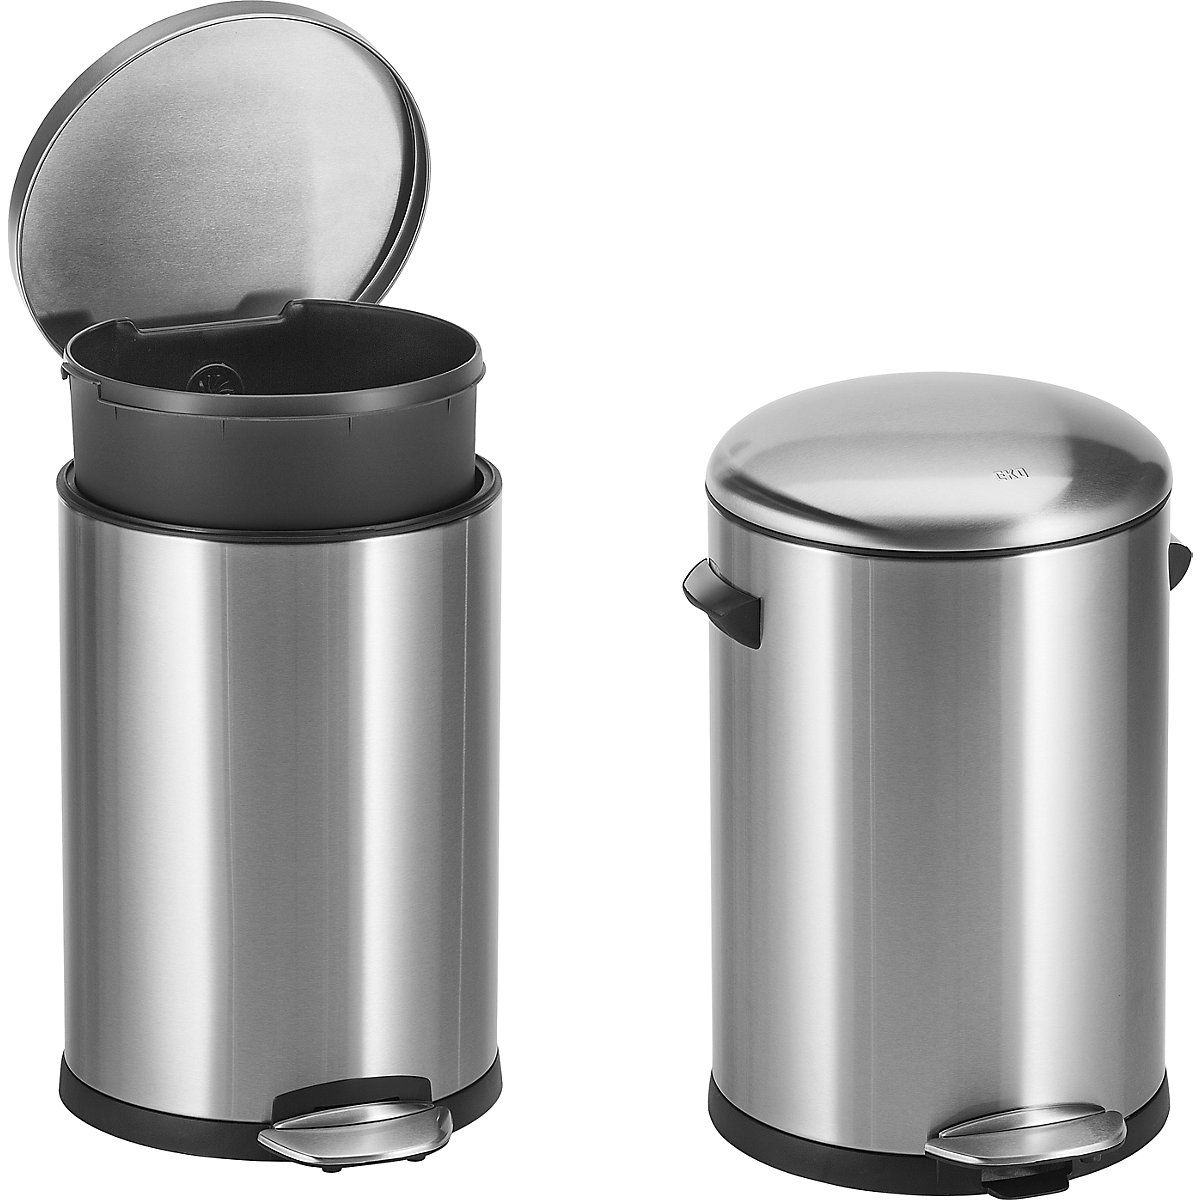 Coș de gunoi cu pedală, din inox, rotund – EKO (Imagine produs 3)-2